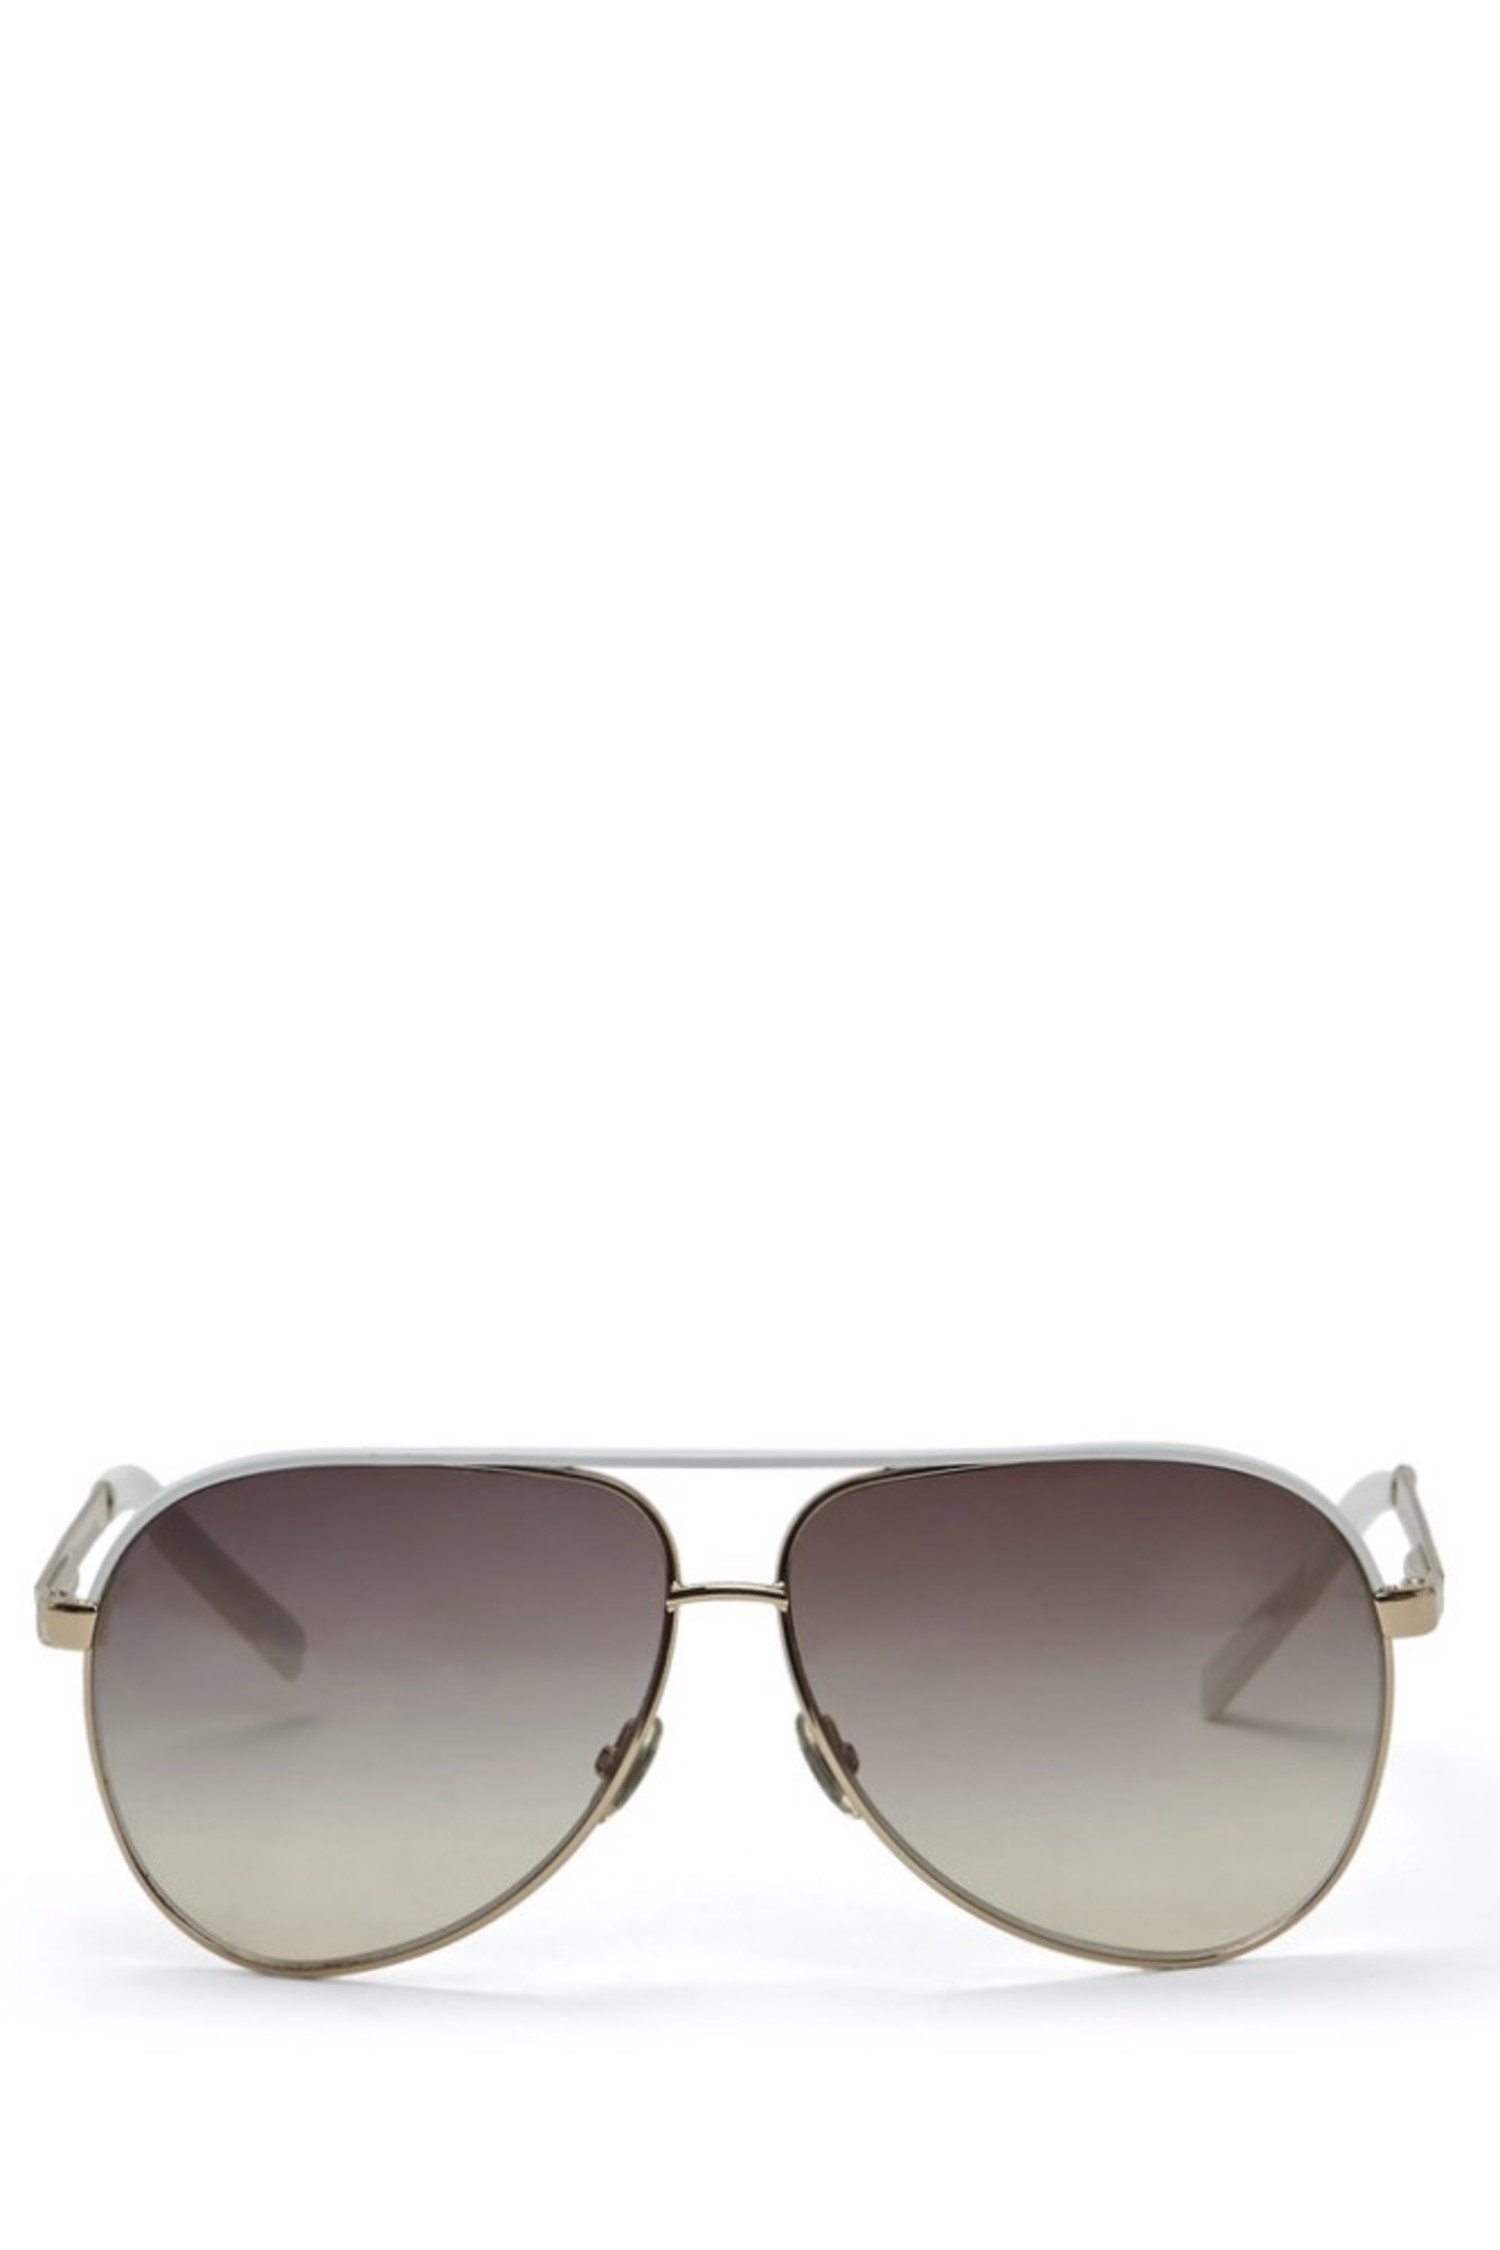 Gucci White GG1827 Aviator Sunglasses 